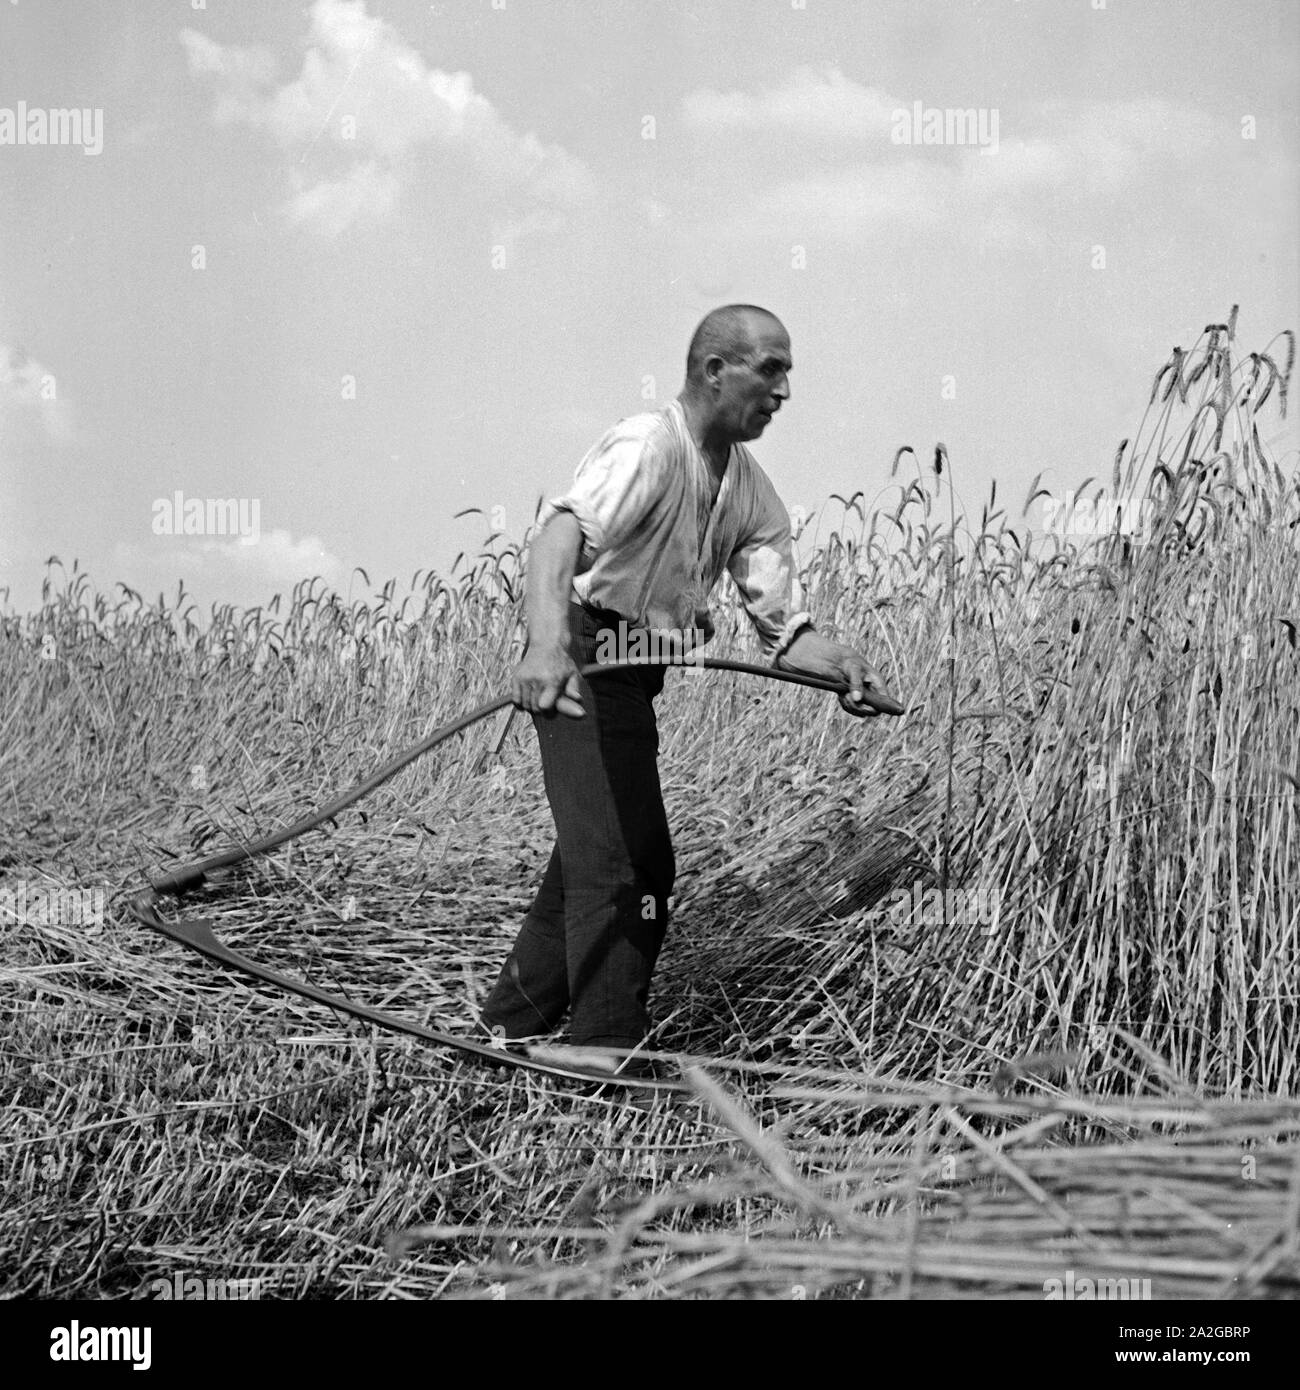 Bauer bei der Getreideernte, Deutschland 1930er Jahre. Farmer harvesting grain, Germany 1930s. Stock Photo